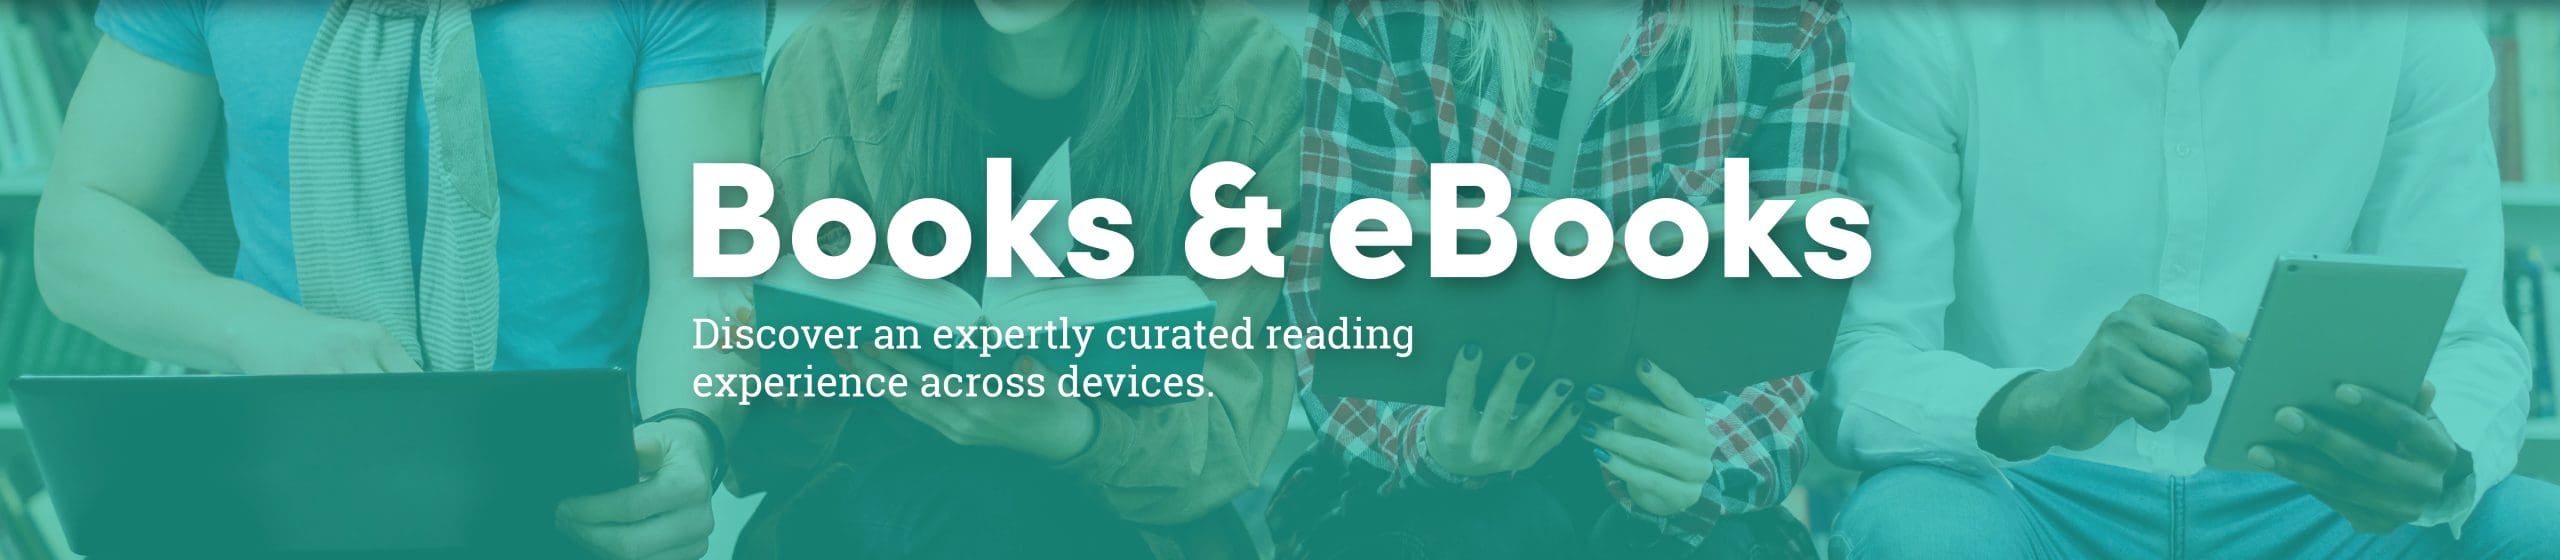 Books&eBooks_No Icons